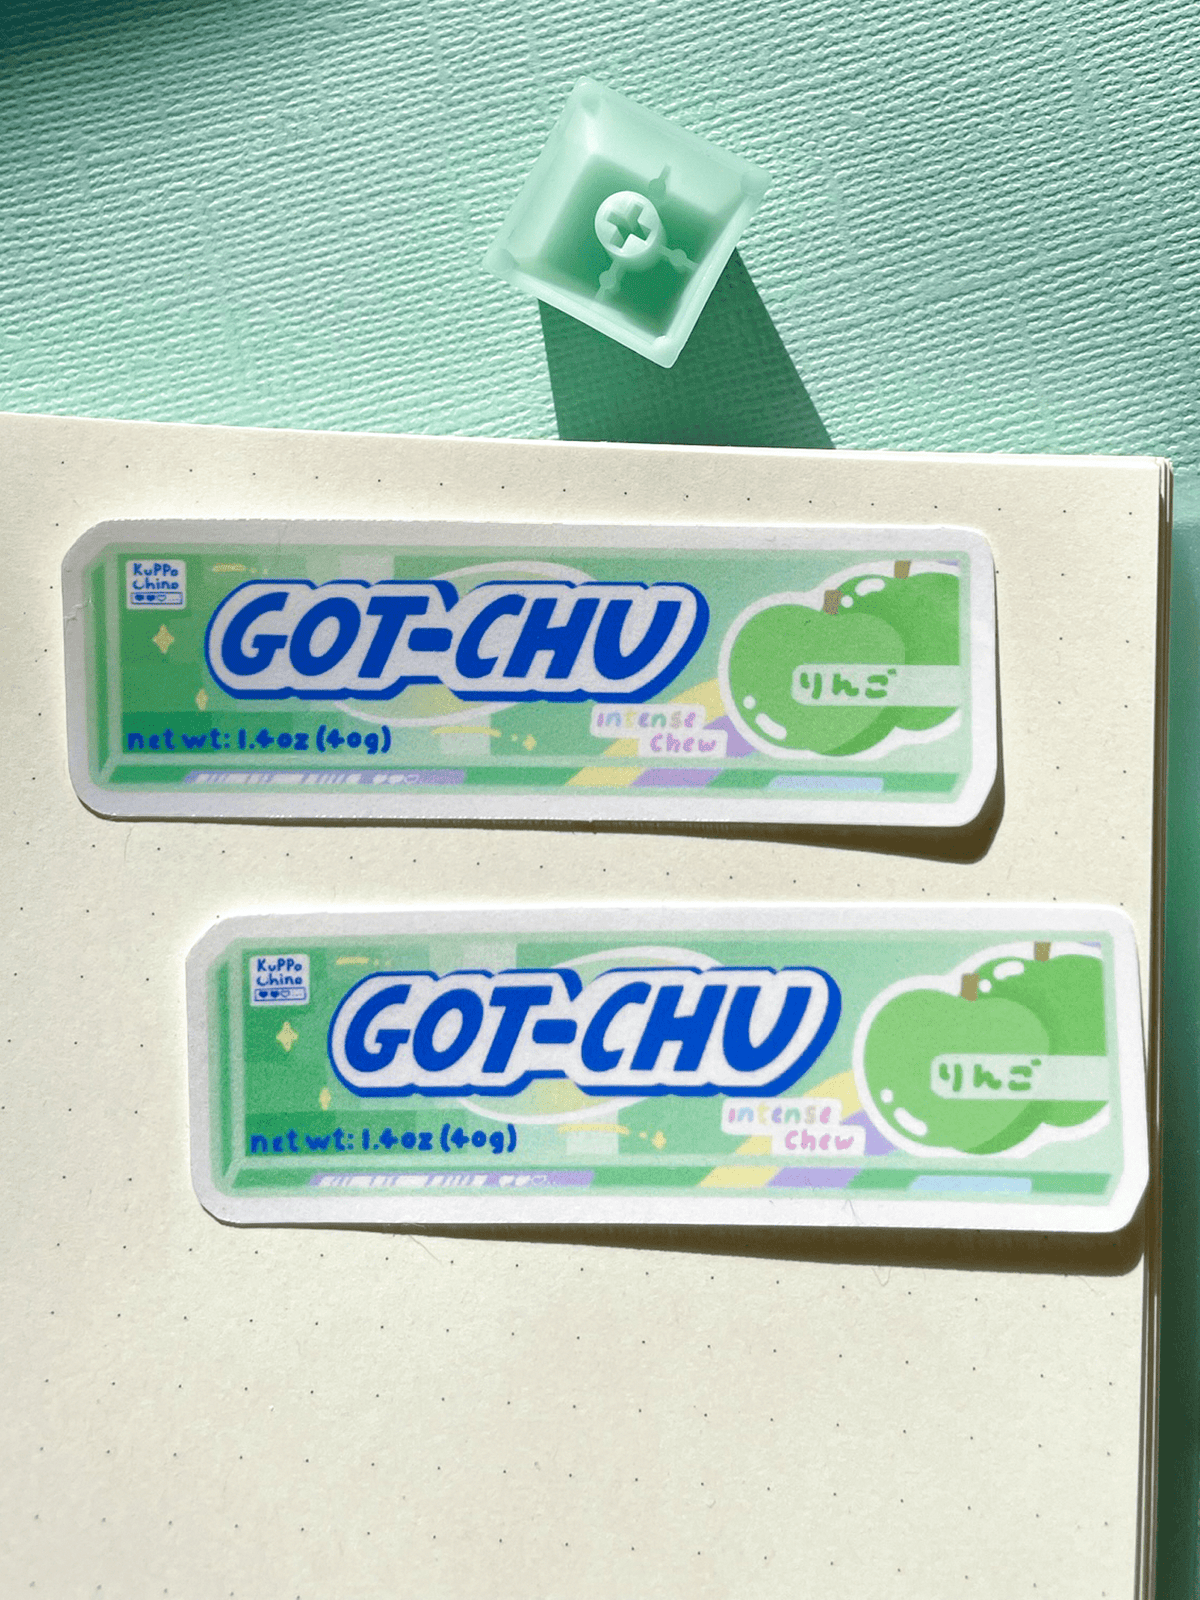 Kuppochino Cafe Green Apple Gotchu Vinyl Sticker